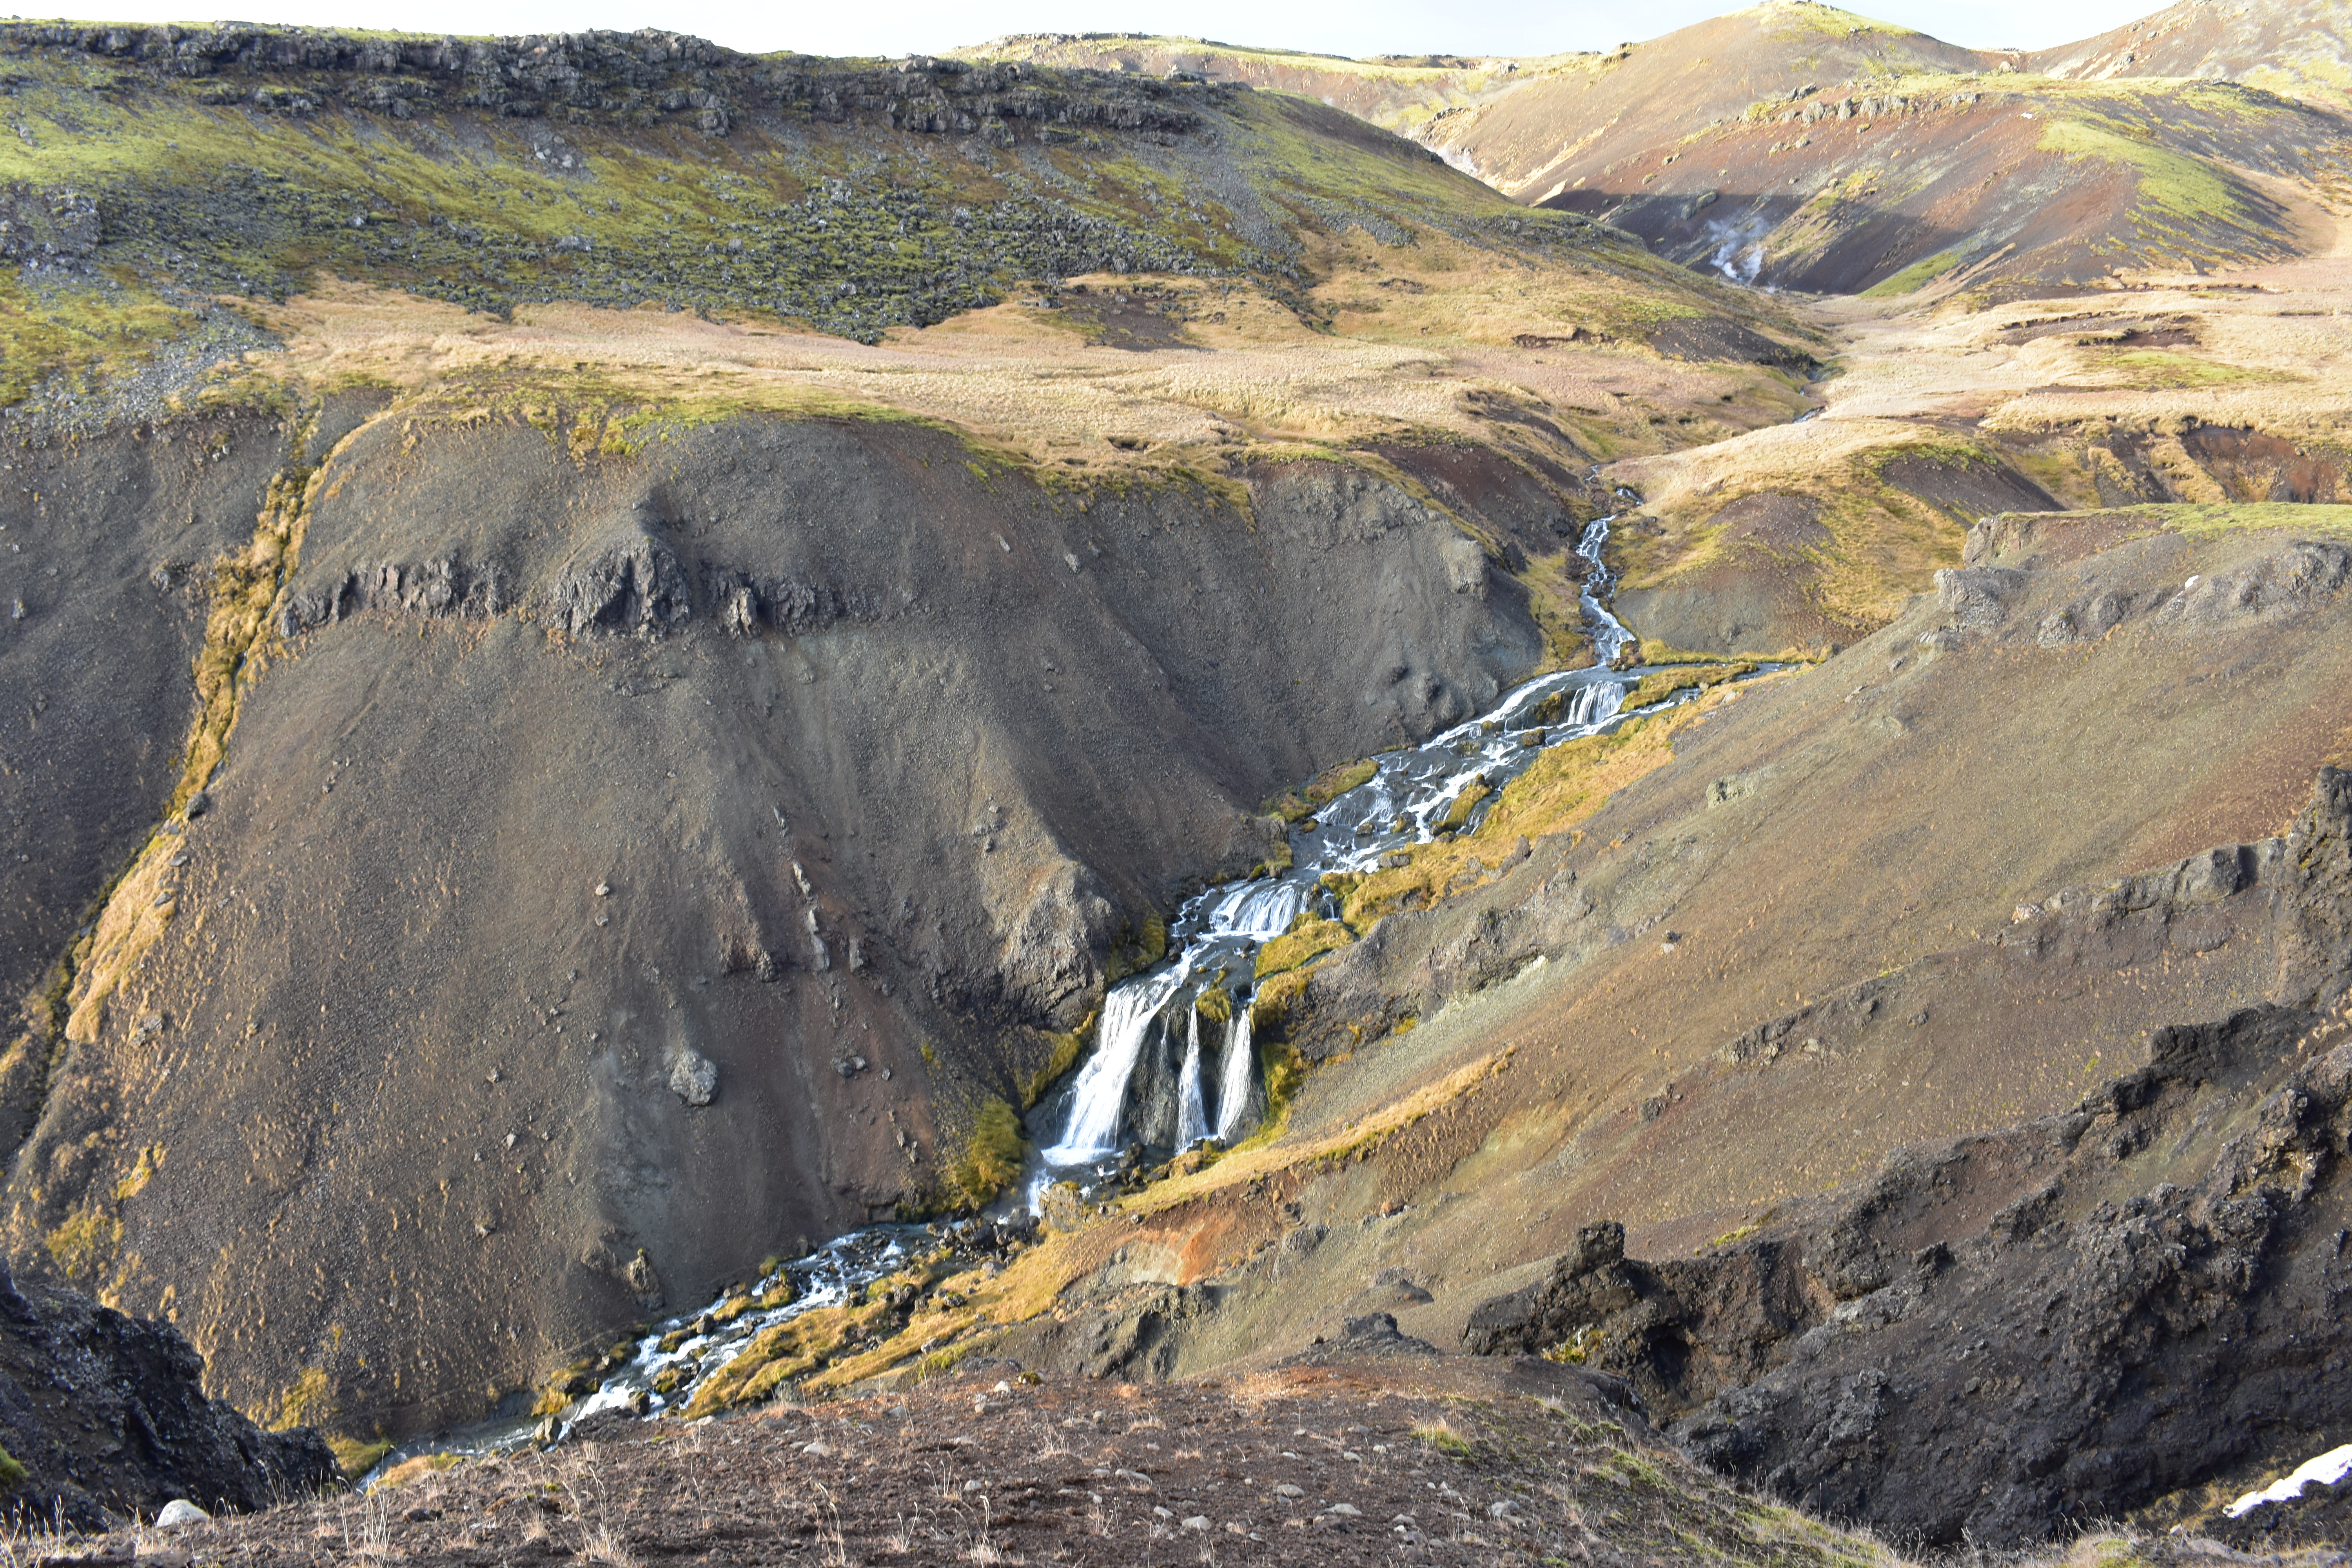 Reykjadalur Wanderung Zur Heißen Quelle Guide To Iceland 